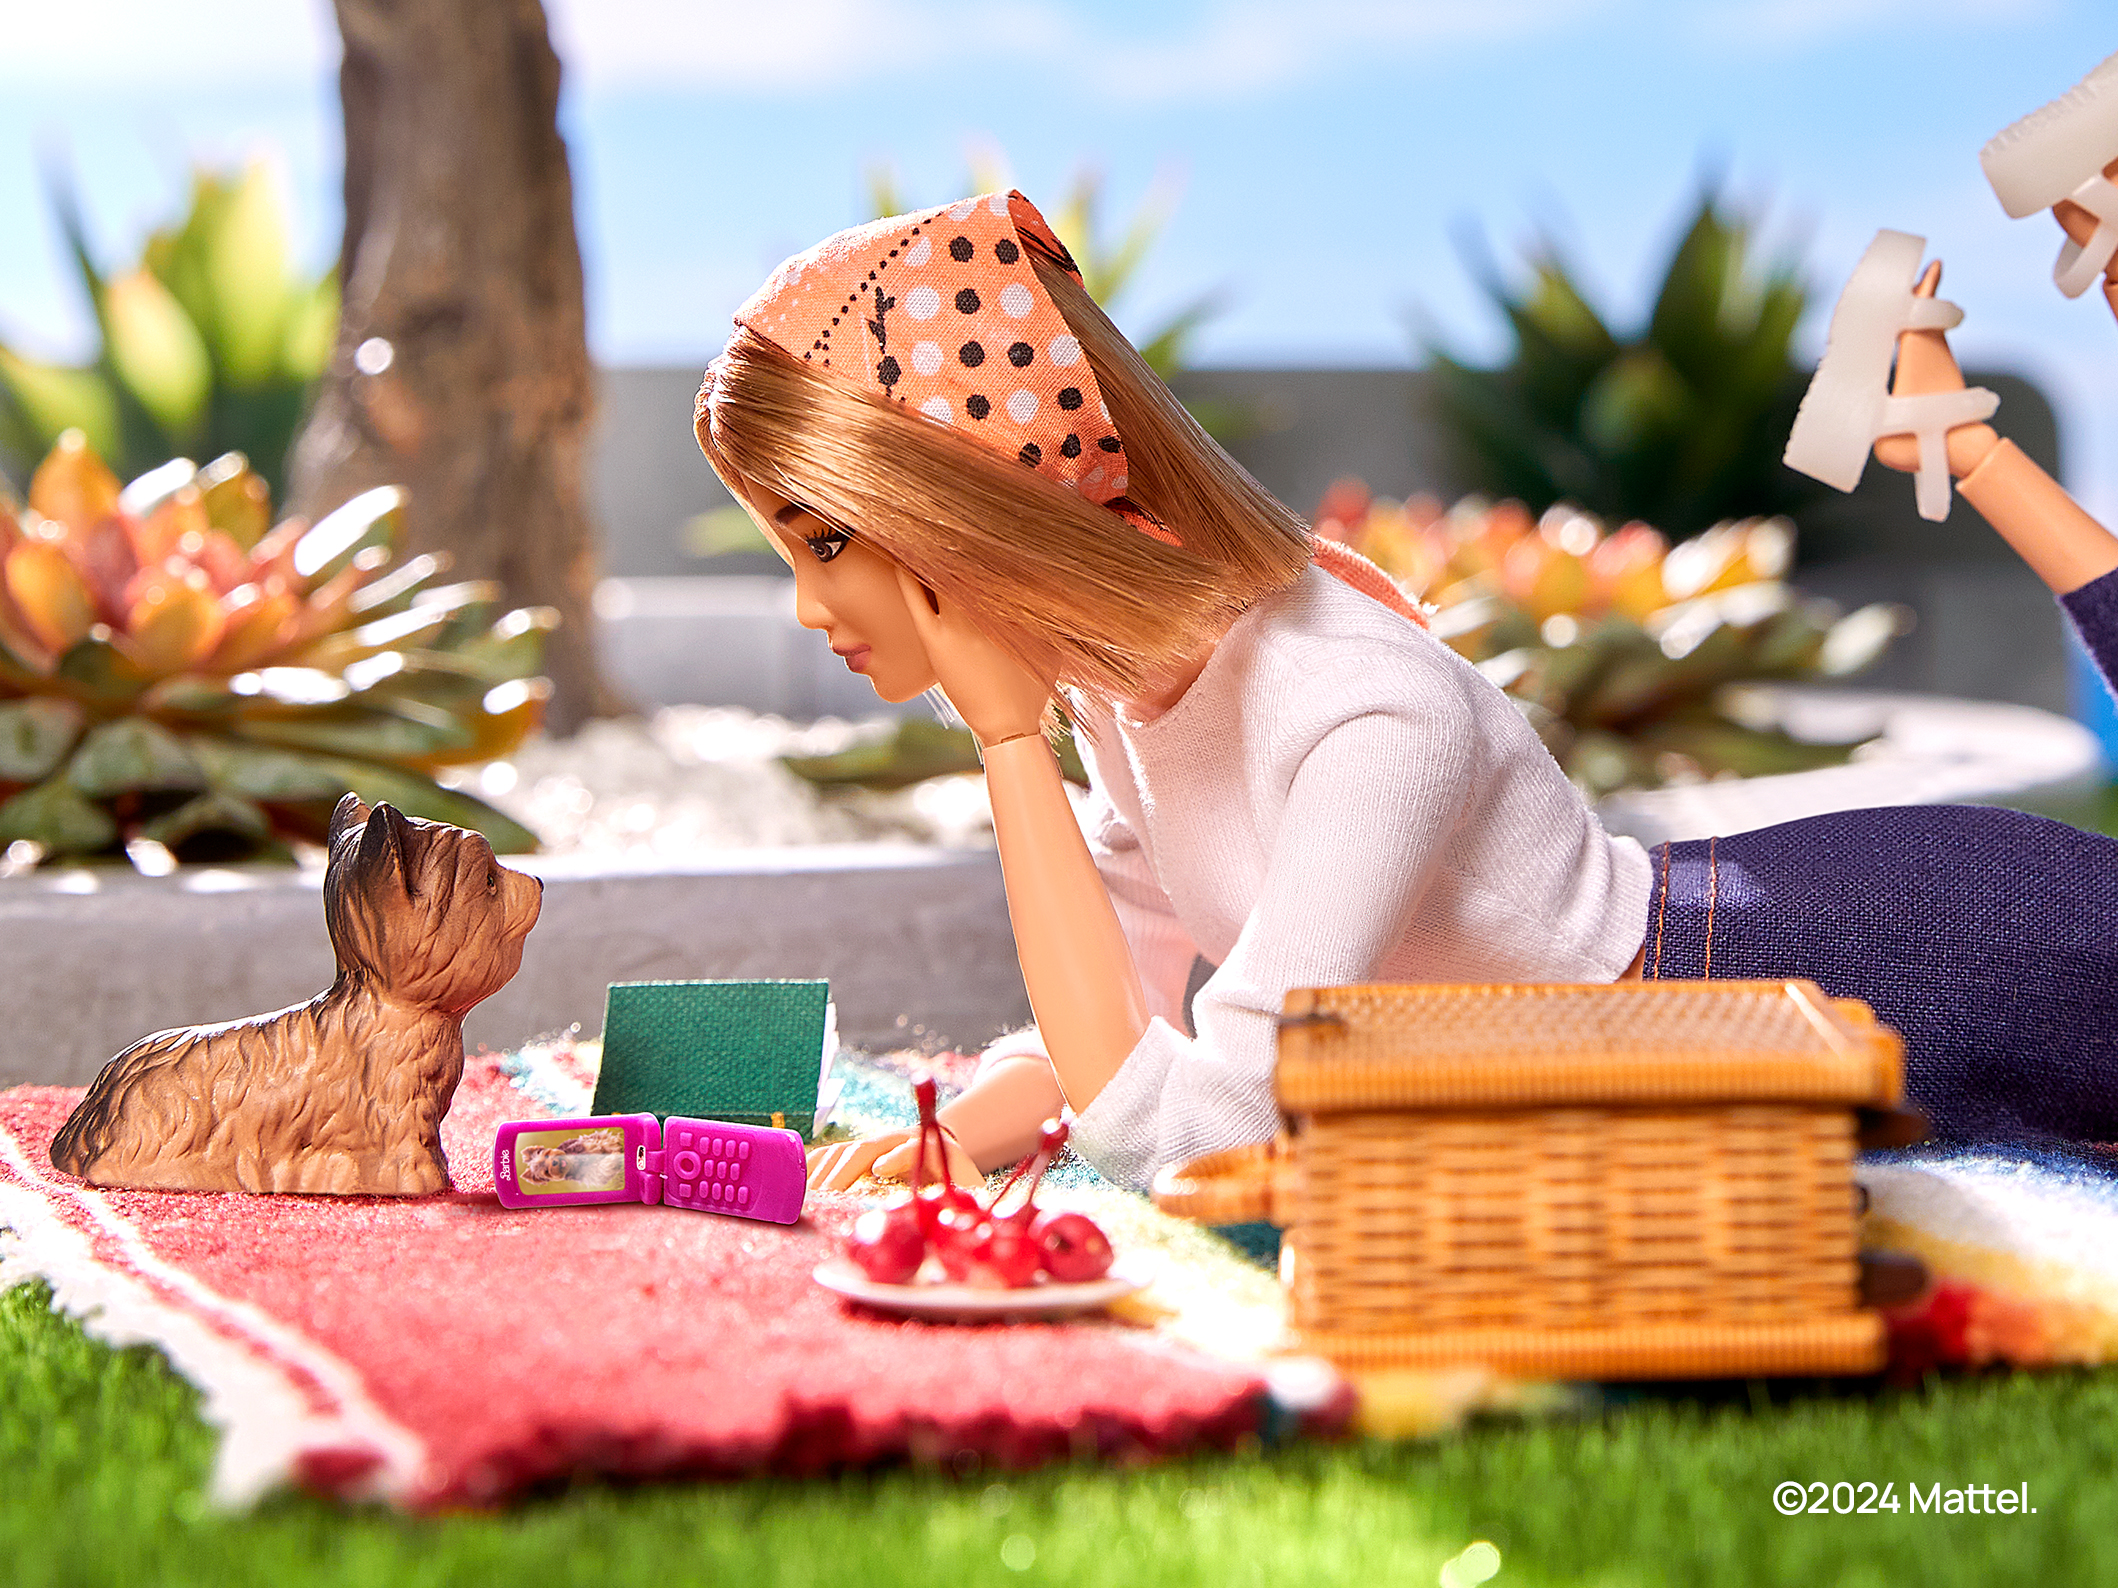 MWC 2024 : après son film évènement, Barbie va avoir le droit à un smartphone à son nom